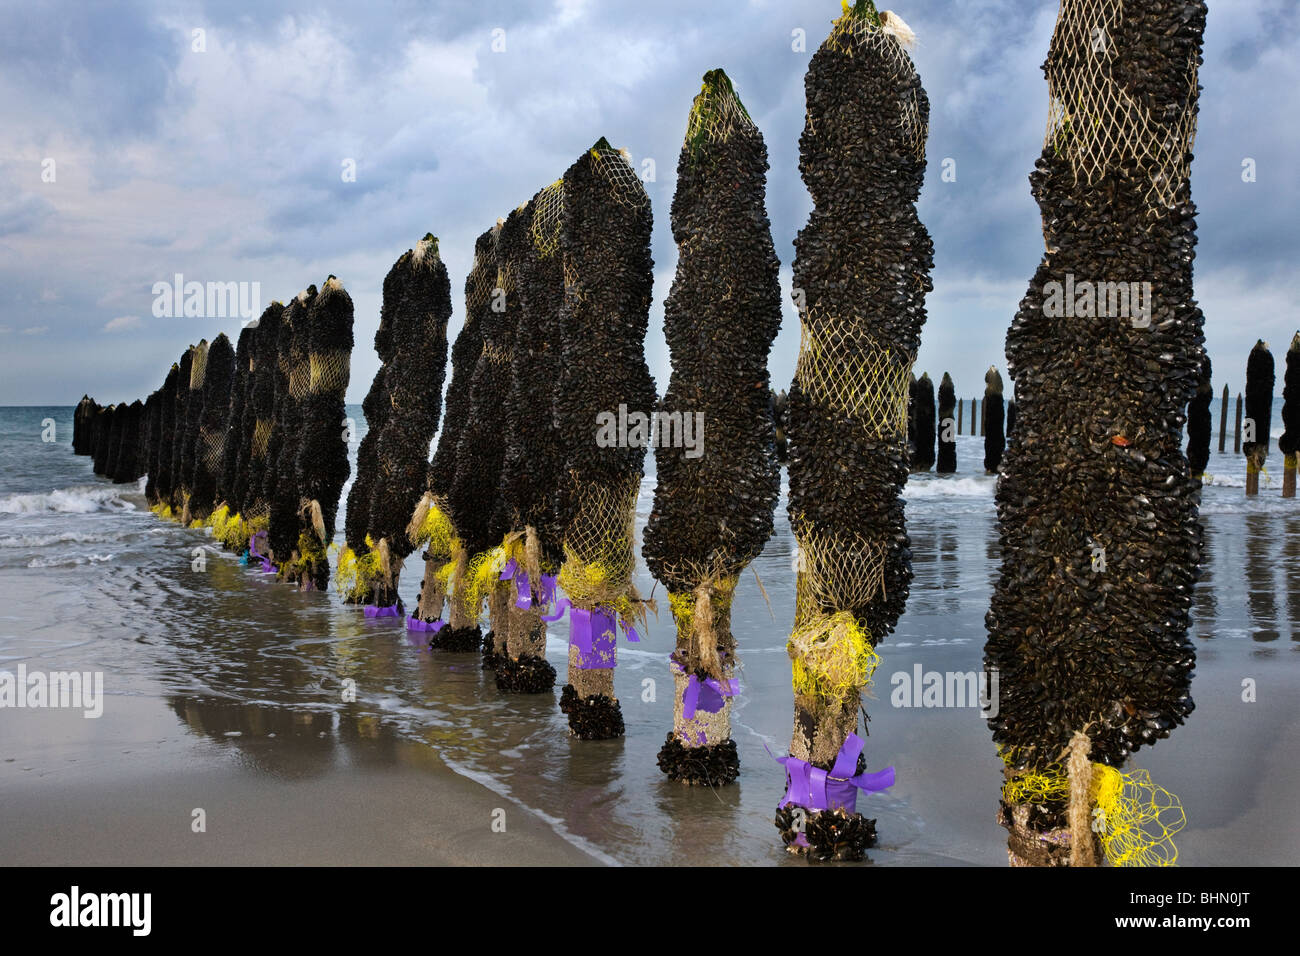 Mussel culture / farming on the beach of Cap Gris Nez, Côte d'Opale, France Stock Photo